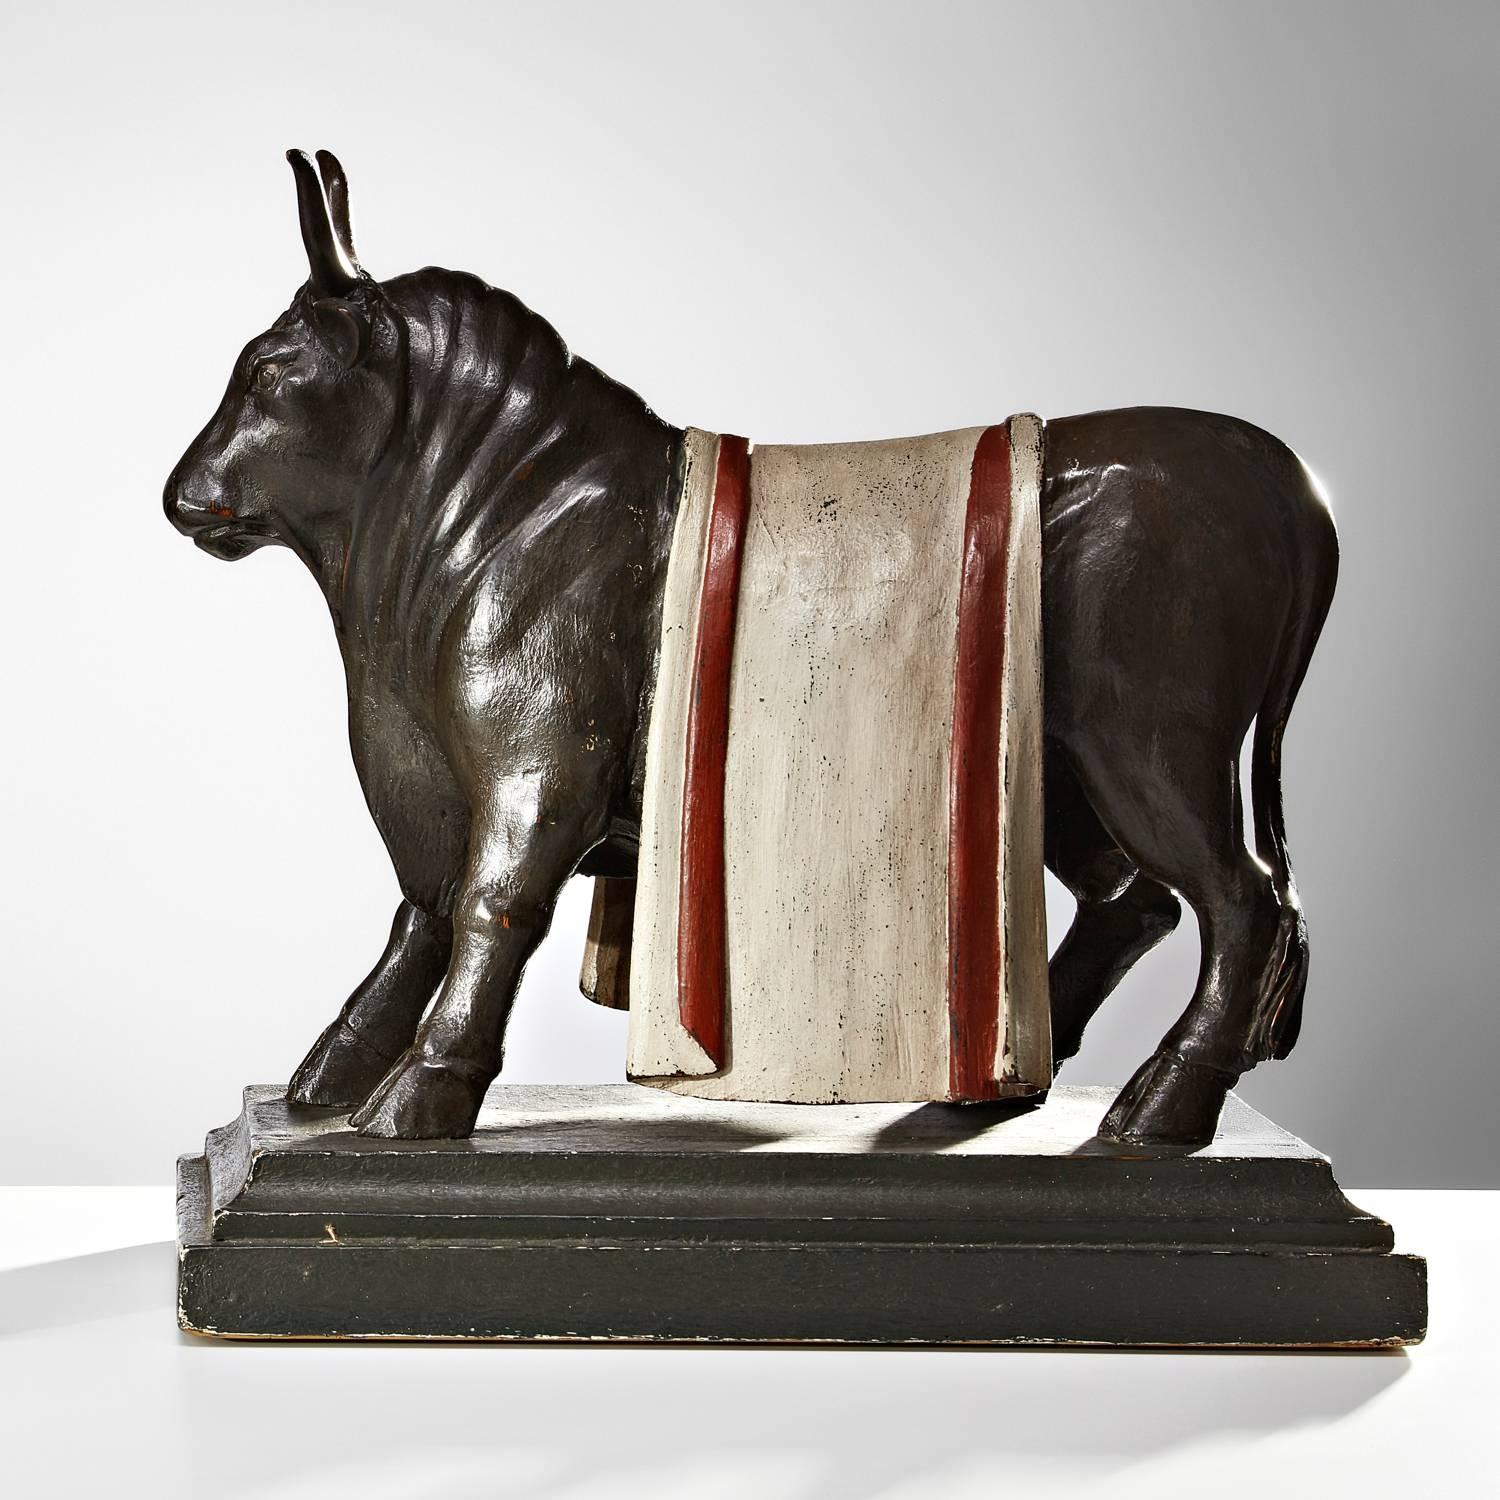 Impressionnante paire de sculptures anciennes de taureaux en bois, européennes, vers 1840.
Un sujet inhabituel, non seulement le corps bien sculpté, mais aussi les magnifiques capes drapées sculptées. Il y a quelques zones d'usure légère en surface,